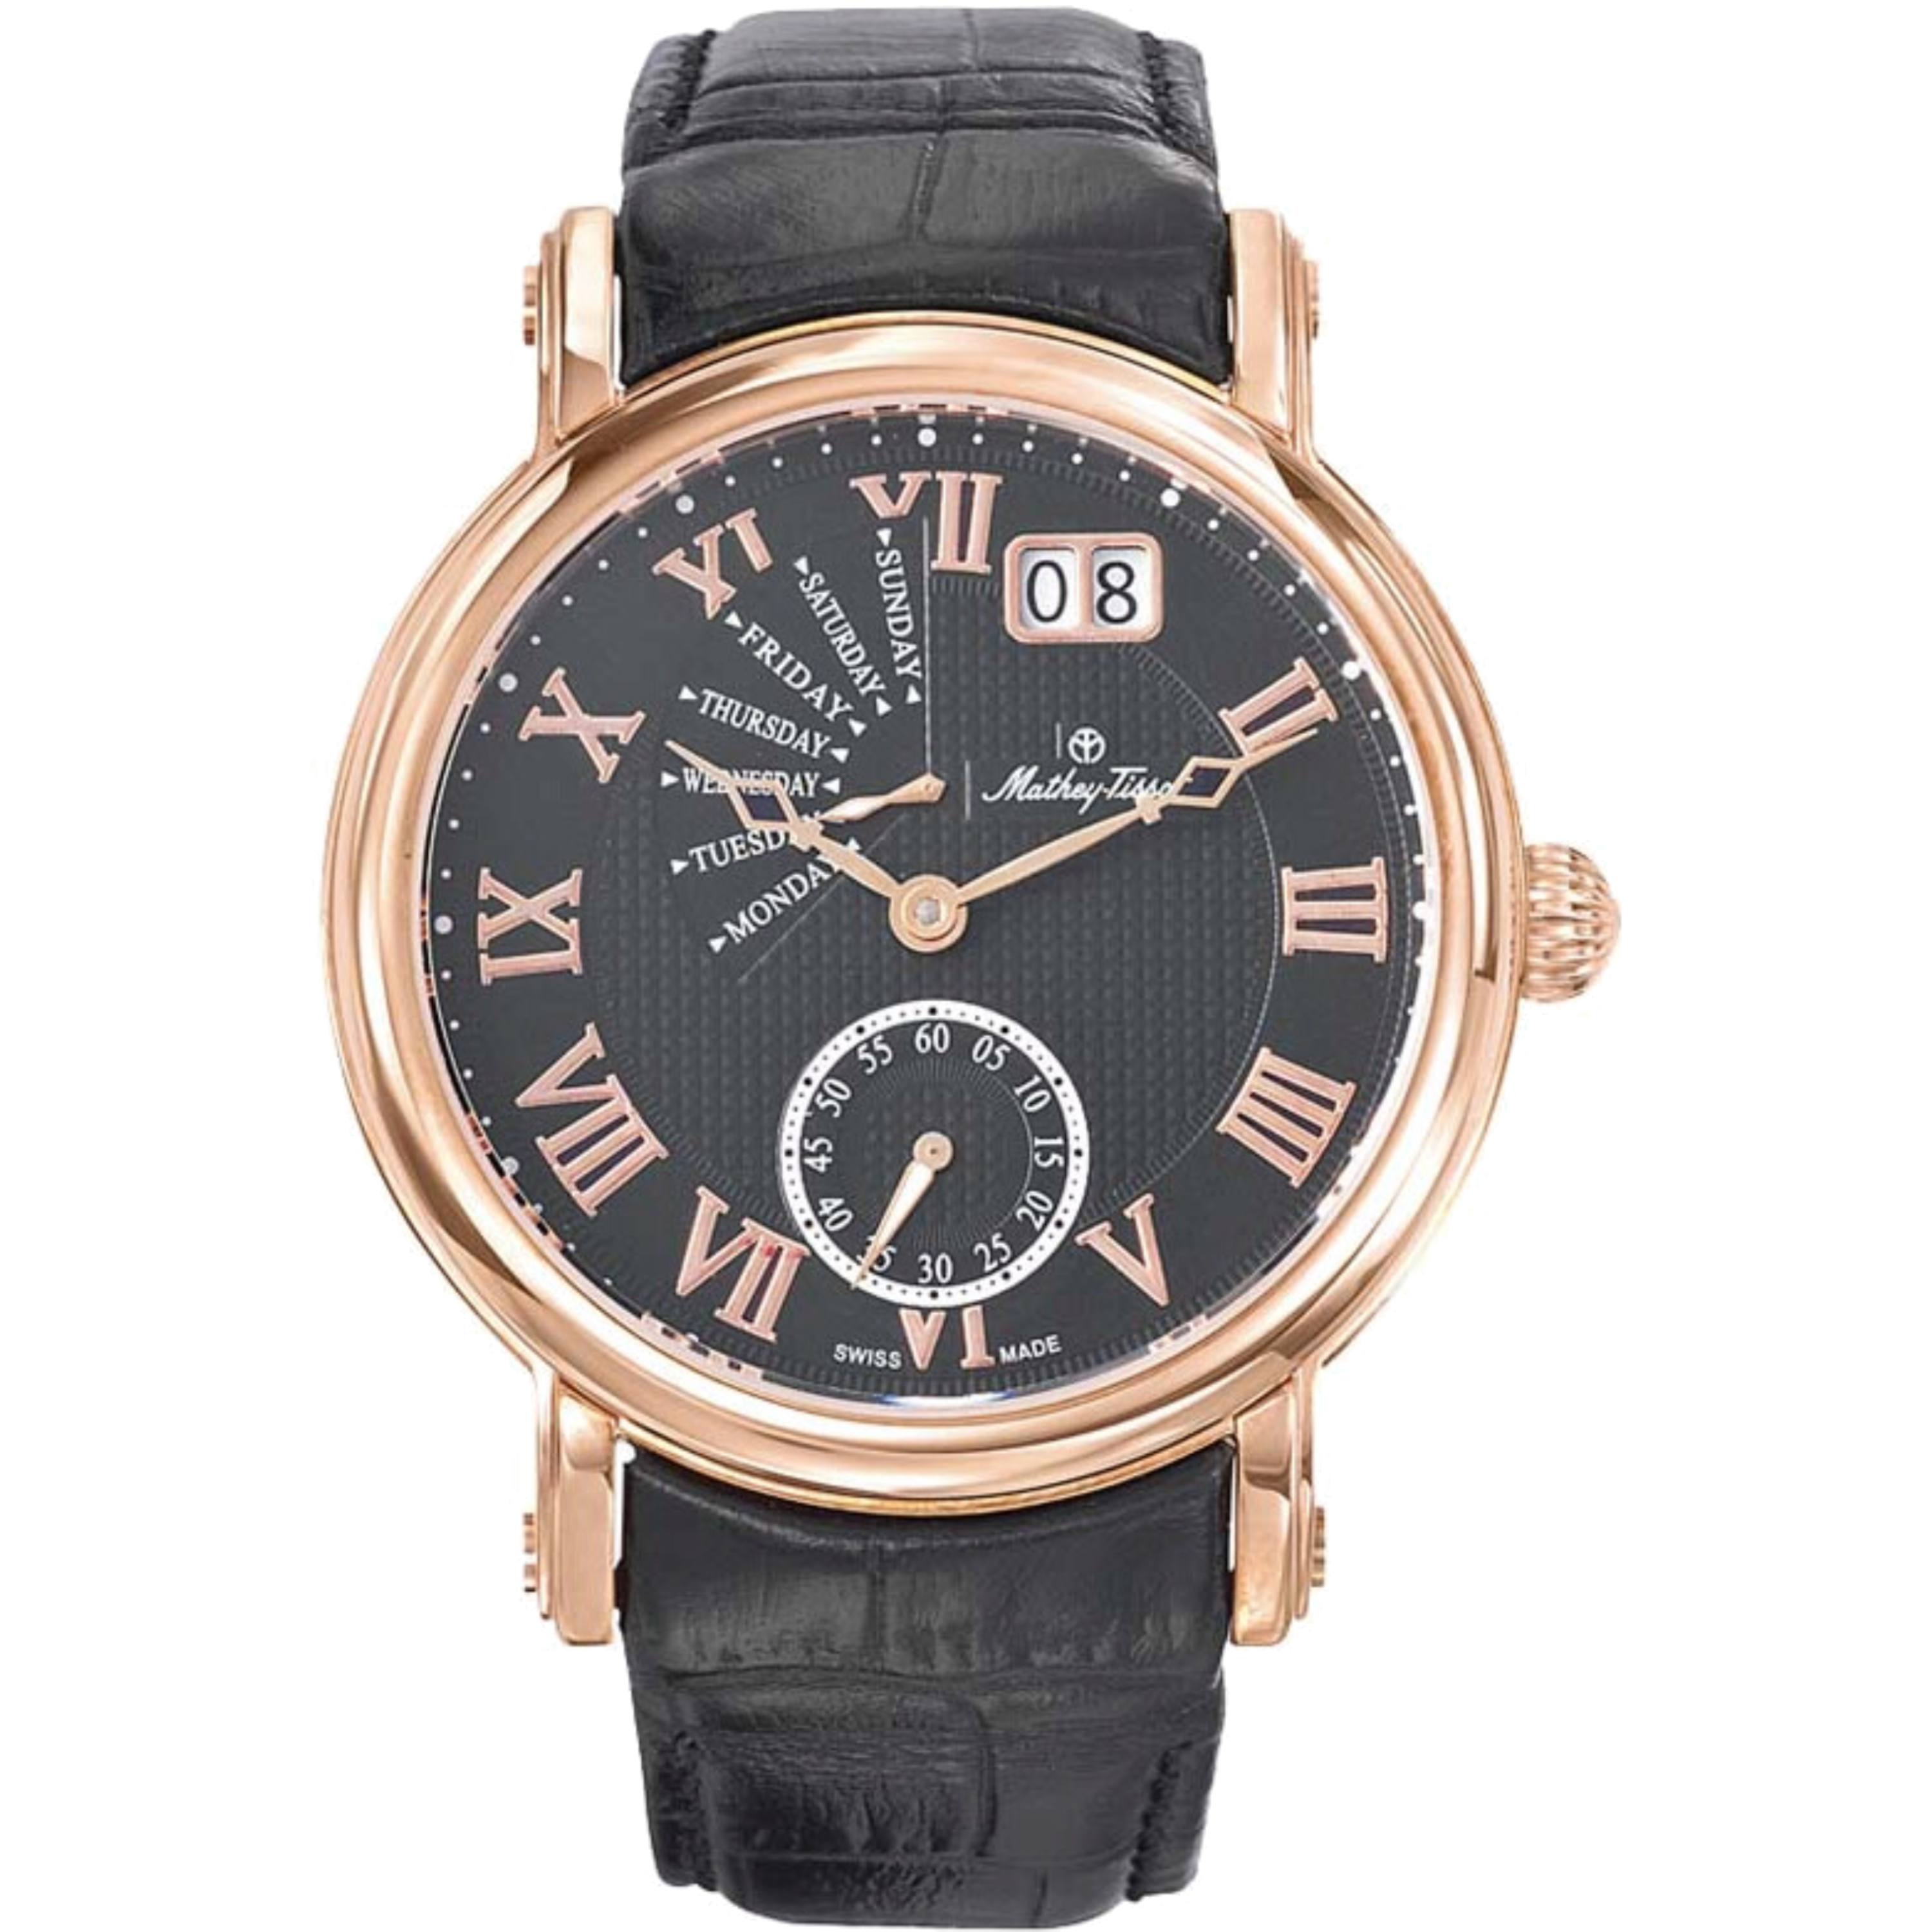 שעון יד לגבר Mathey Tissot H7020PN 43mm צבע שחור/רוזגולד/עור שחור/זכוכית ספיר/רטרוגרד - אחריות לשנתיים